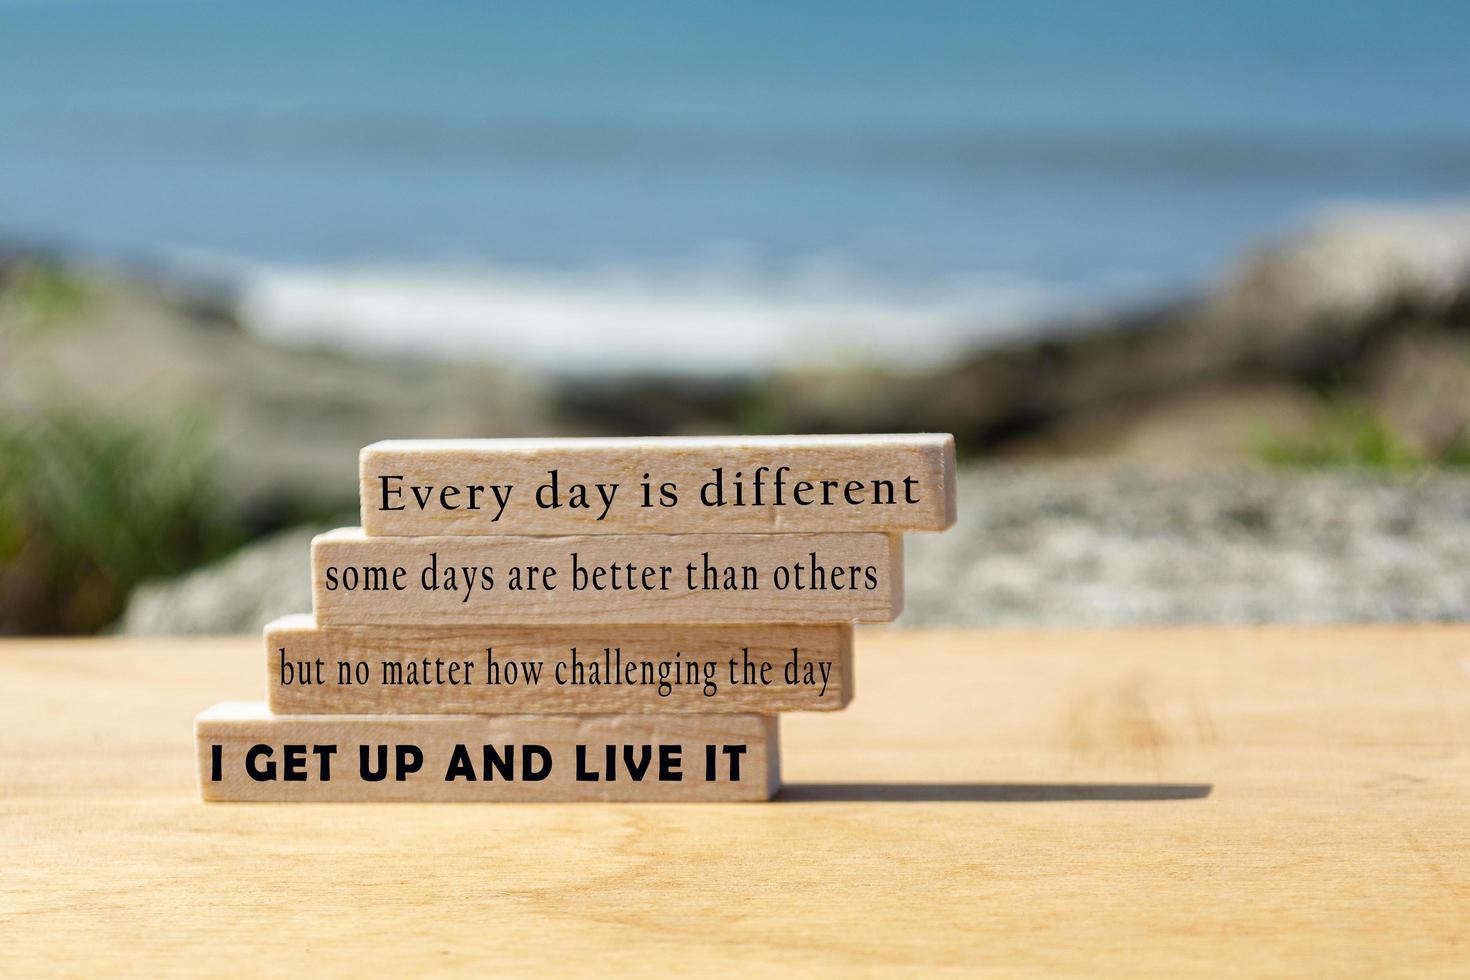 citação motivacional e inspiradora no bloco de madeira com fundo desfocado do oceano foto